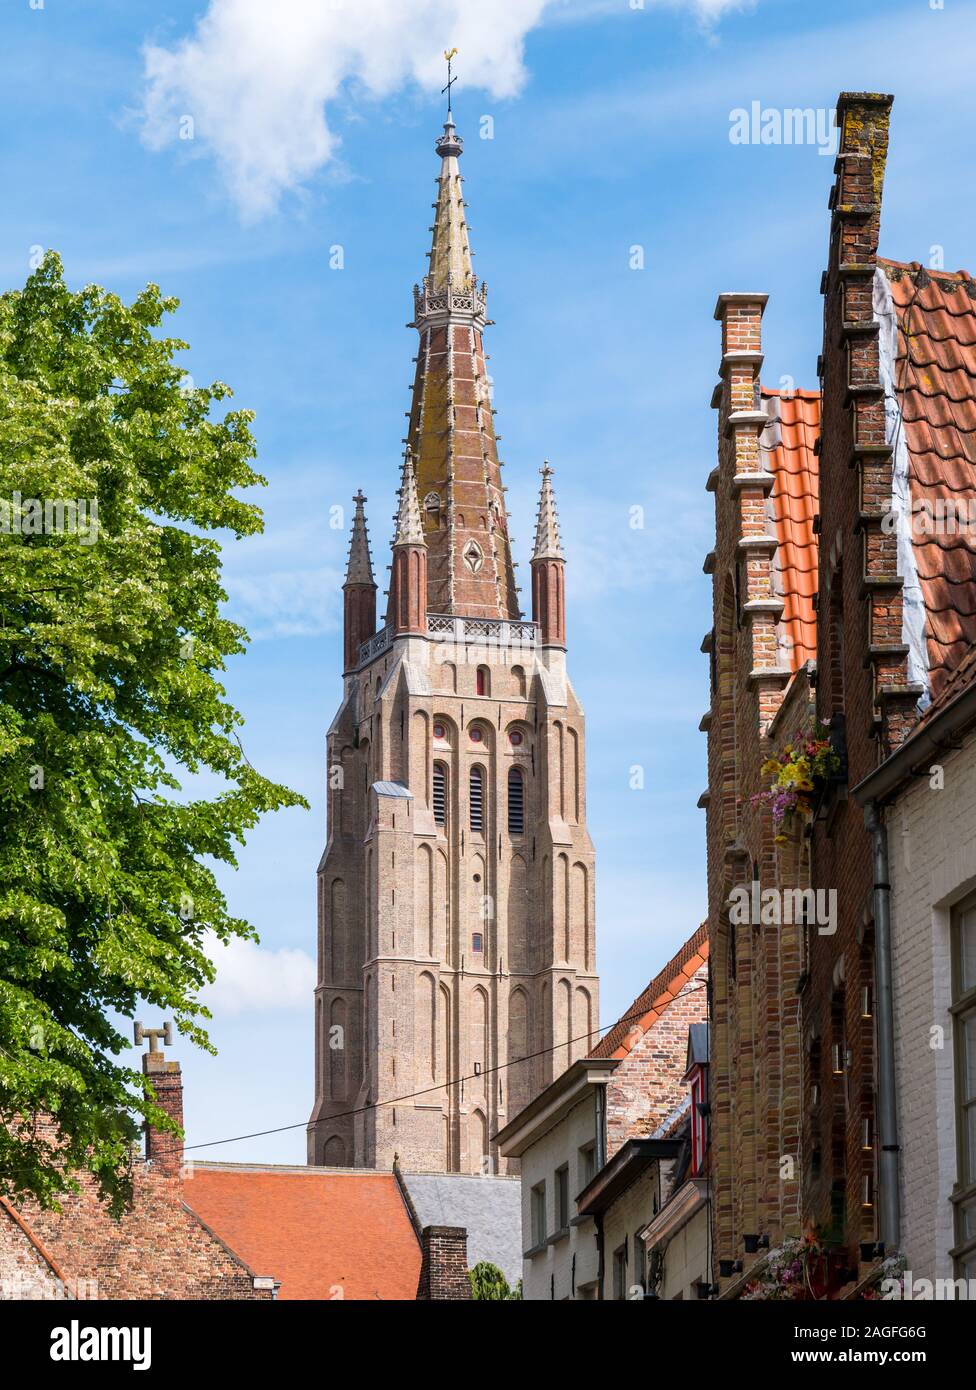 Tour de l'église de Notre Dame, Onze-lieve-Vrouwekerk, à Bruges, Belgique Banque D'Images